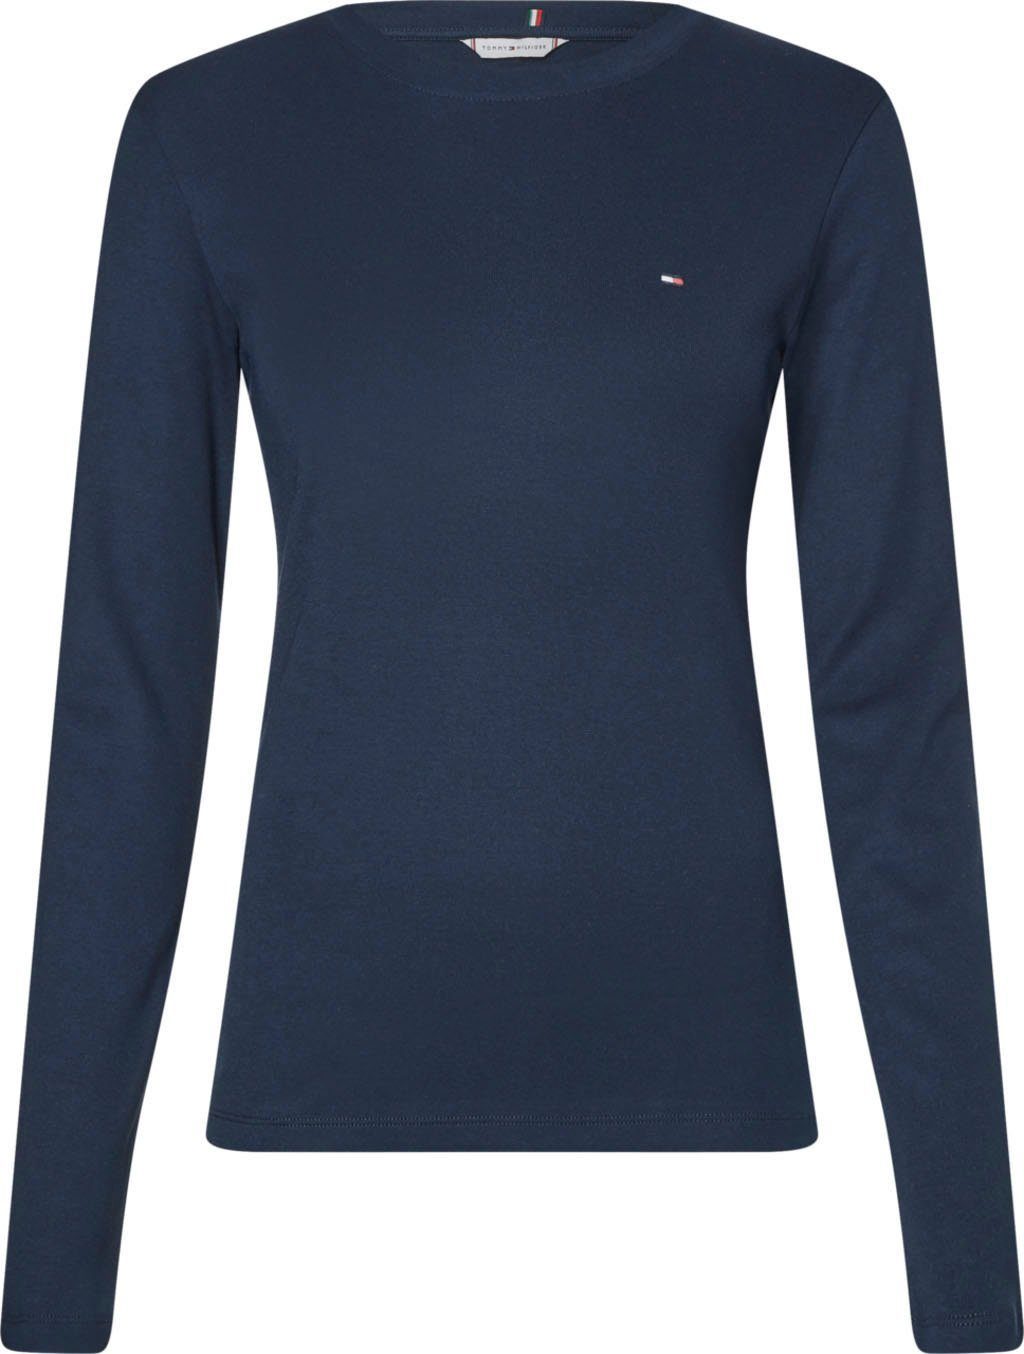 Langarmshirt in blau » Longsleeves online kaufen | OTTO